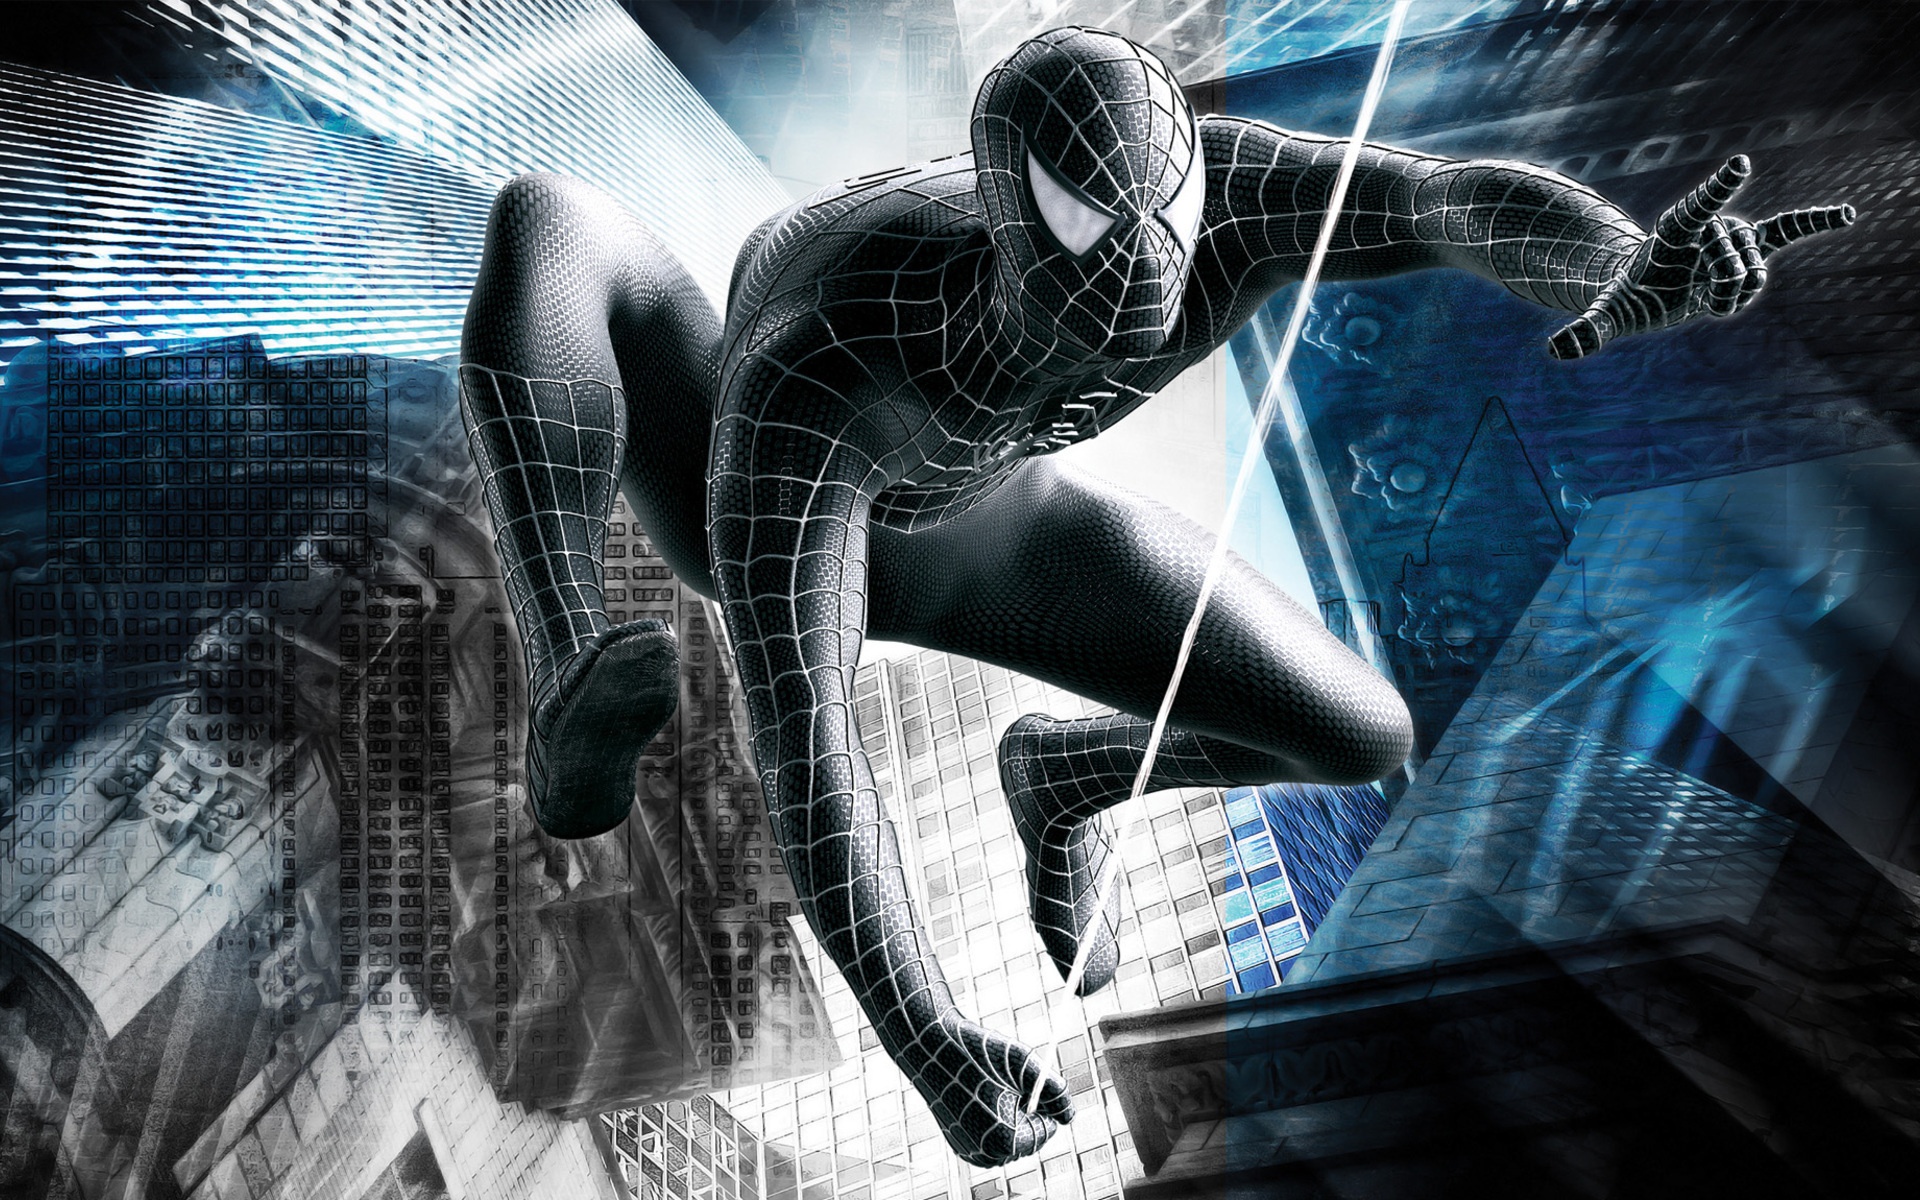 fond d'écran spiderman hd,conception graphique,personnage fictif,oeuvre de cg,homme araignée,illustration